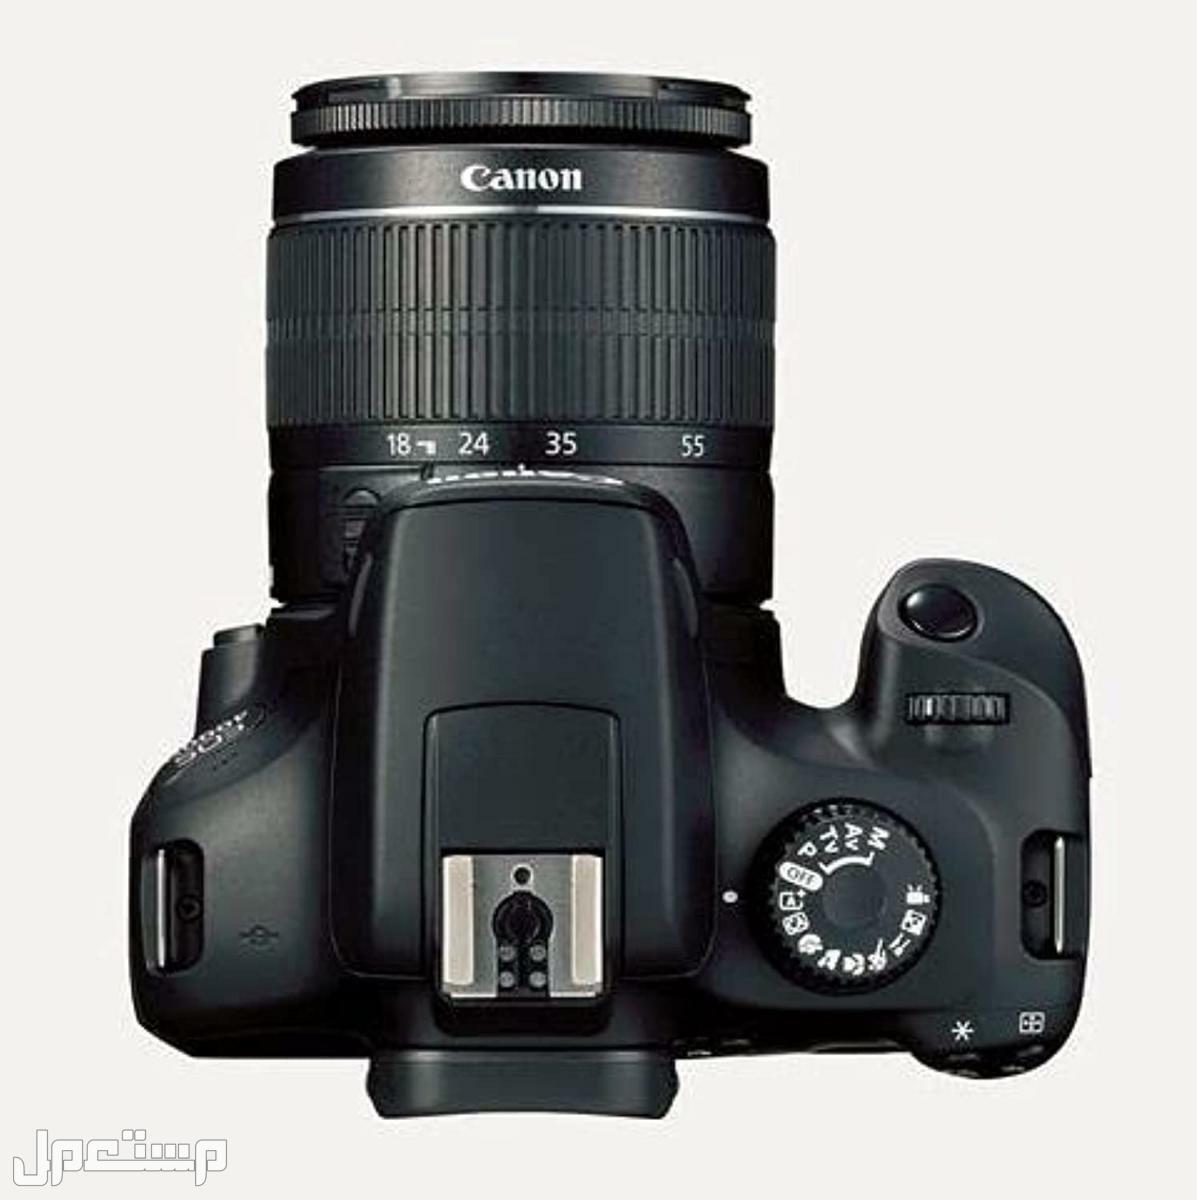 مواصفات وأهم مميزات وأسعار أرخص كاميرا تصوير من كانون في السودان كاميرا كانون  D 4000 بعدسة احادية